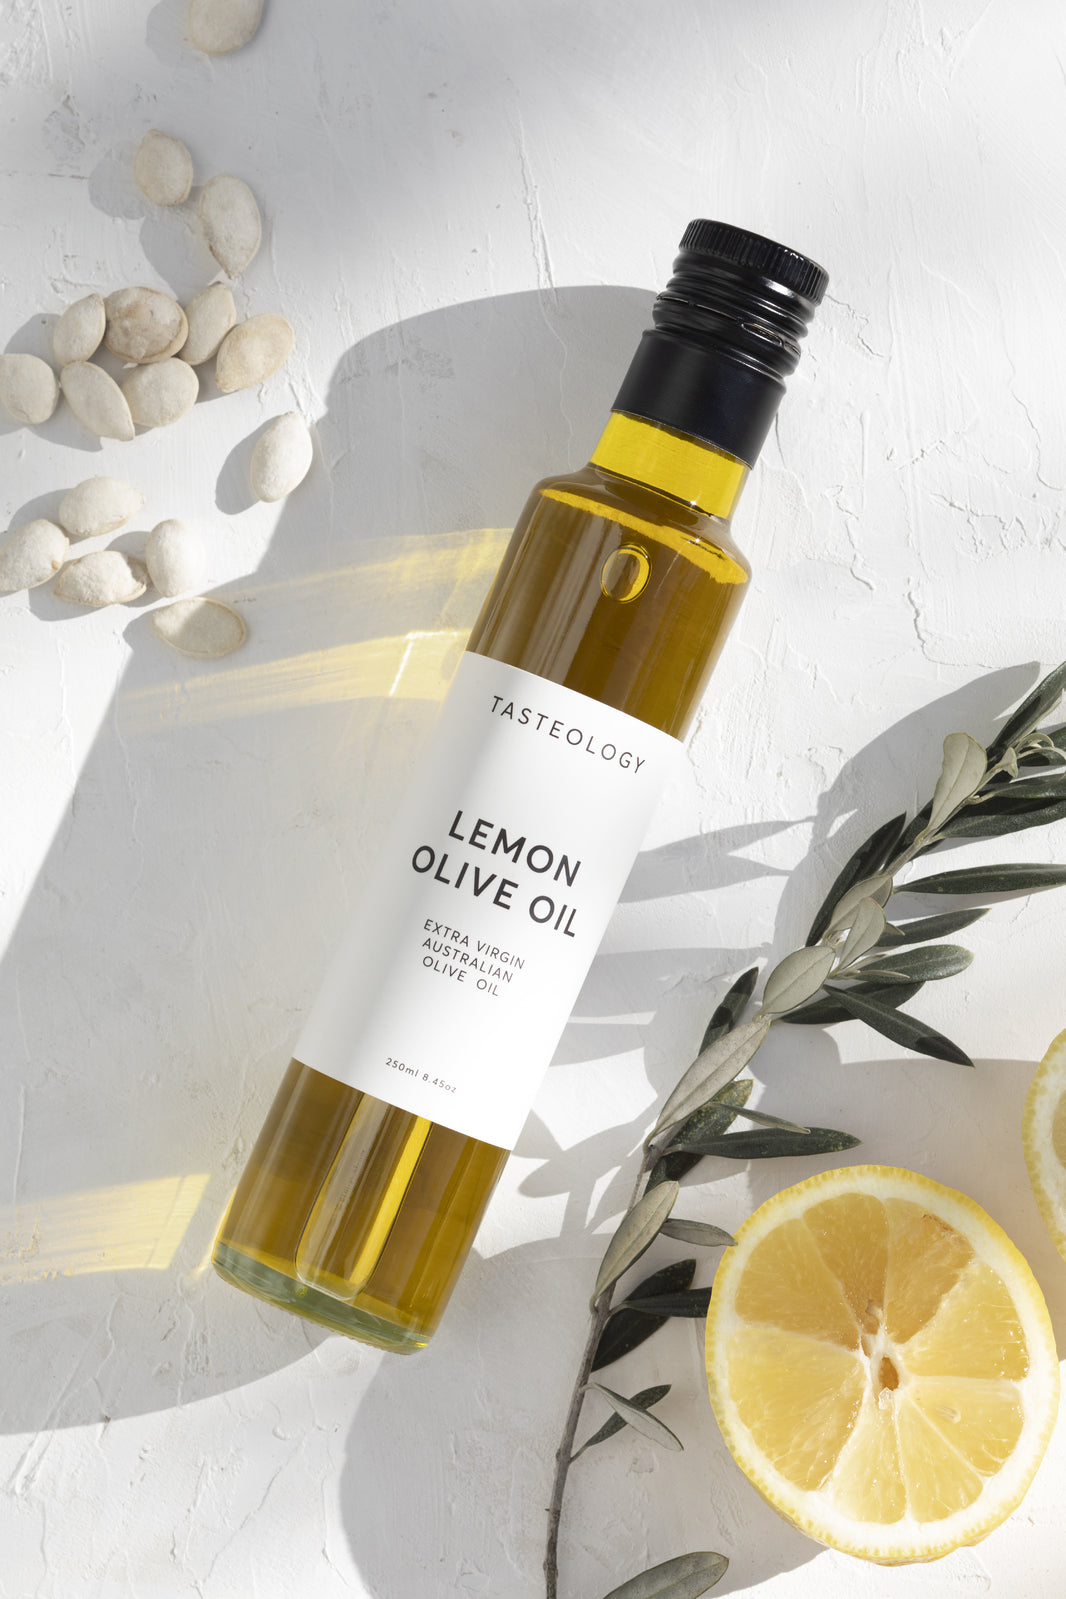 Lemon Olive Oil 250ml